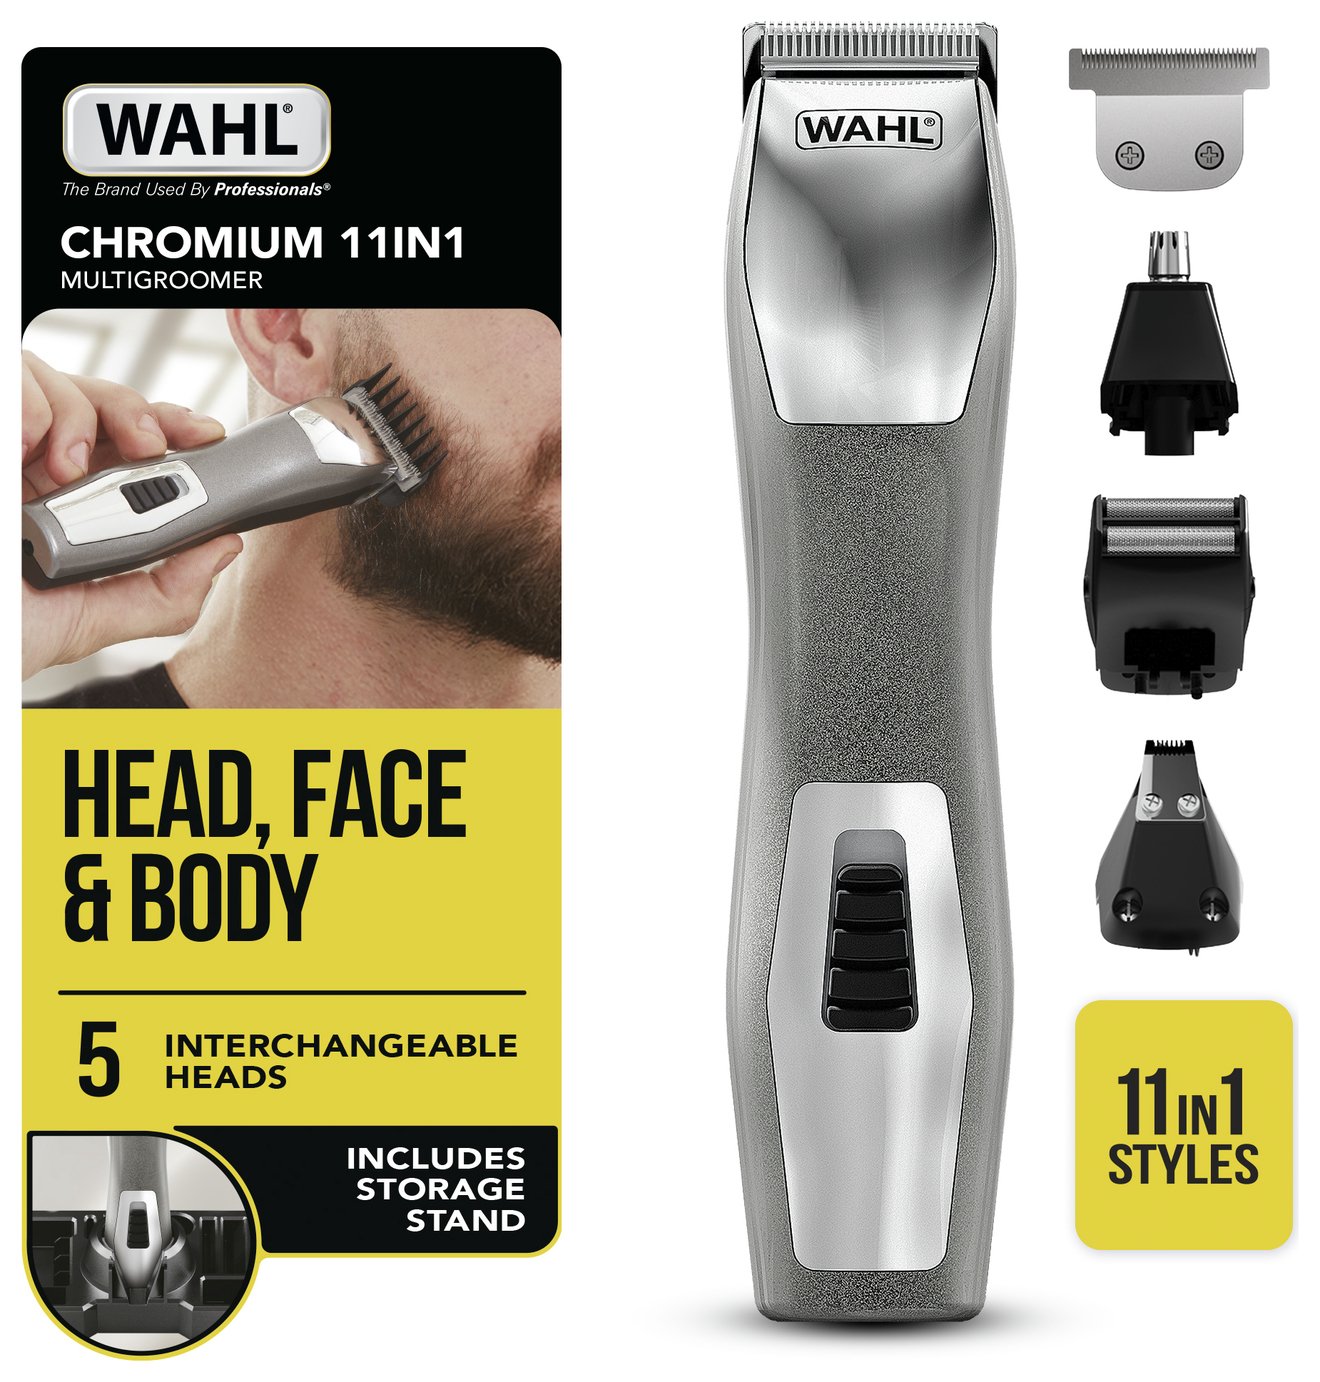 hair groomer kit